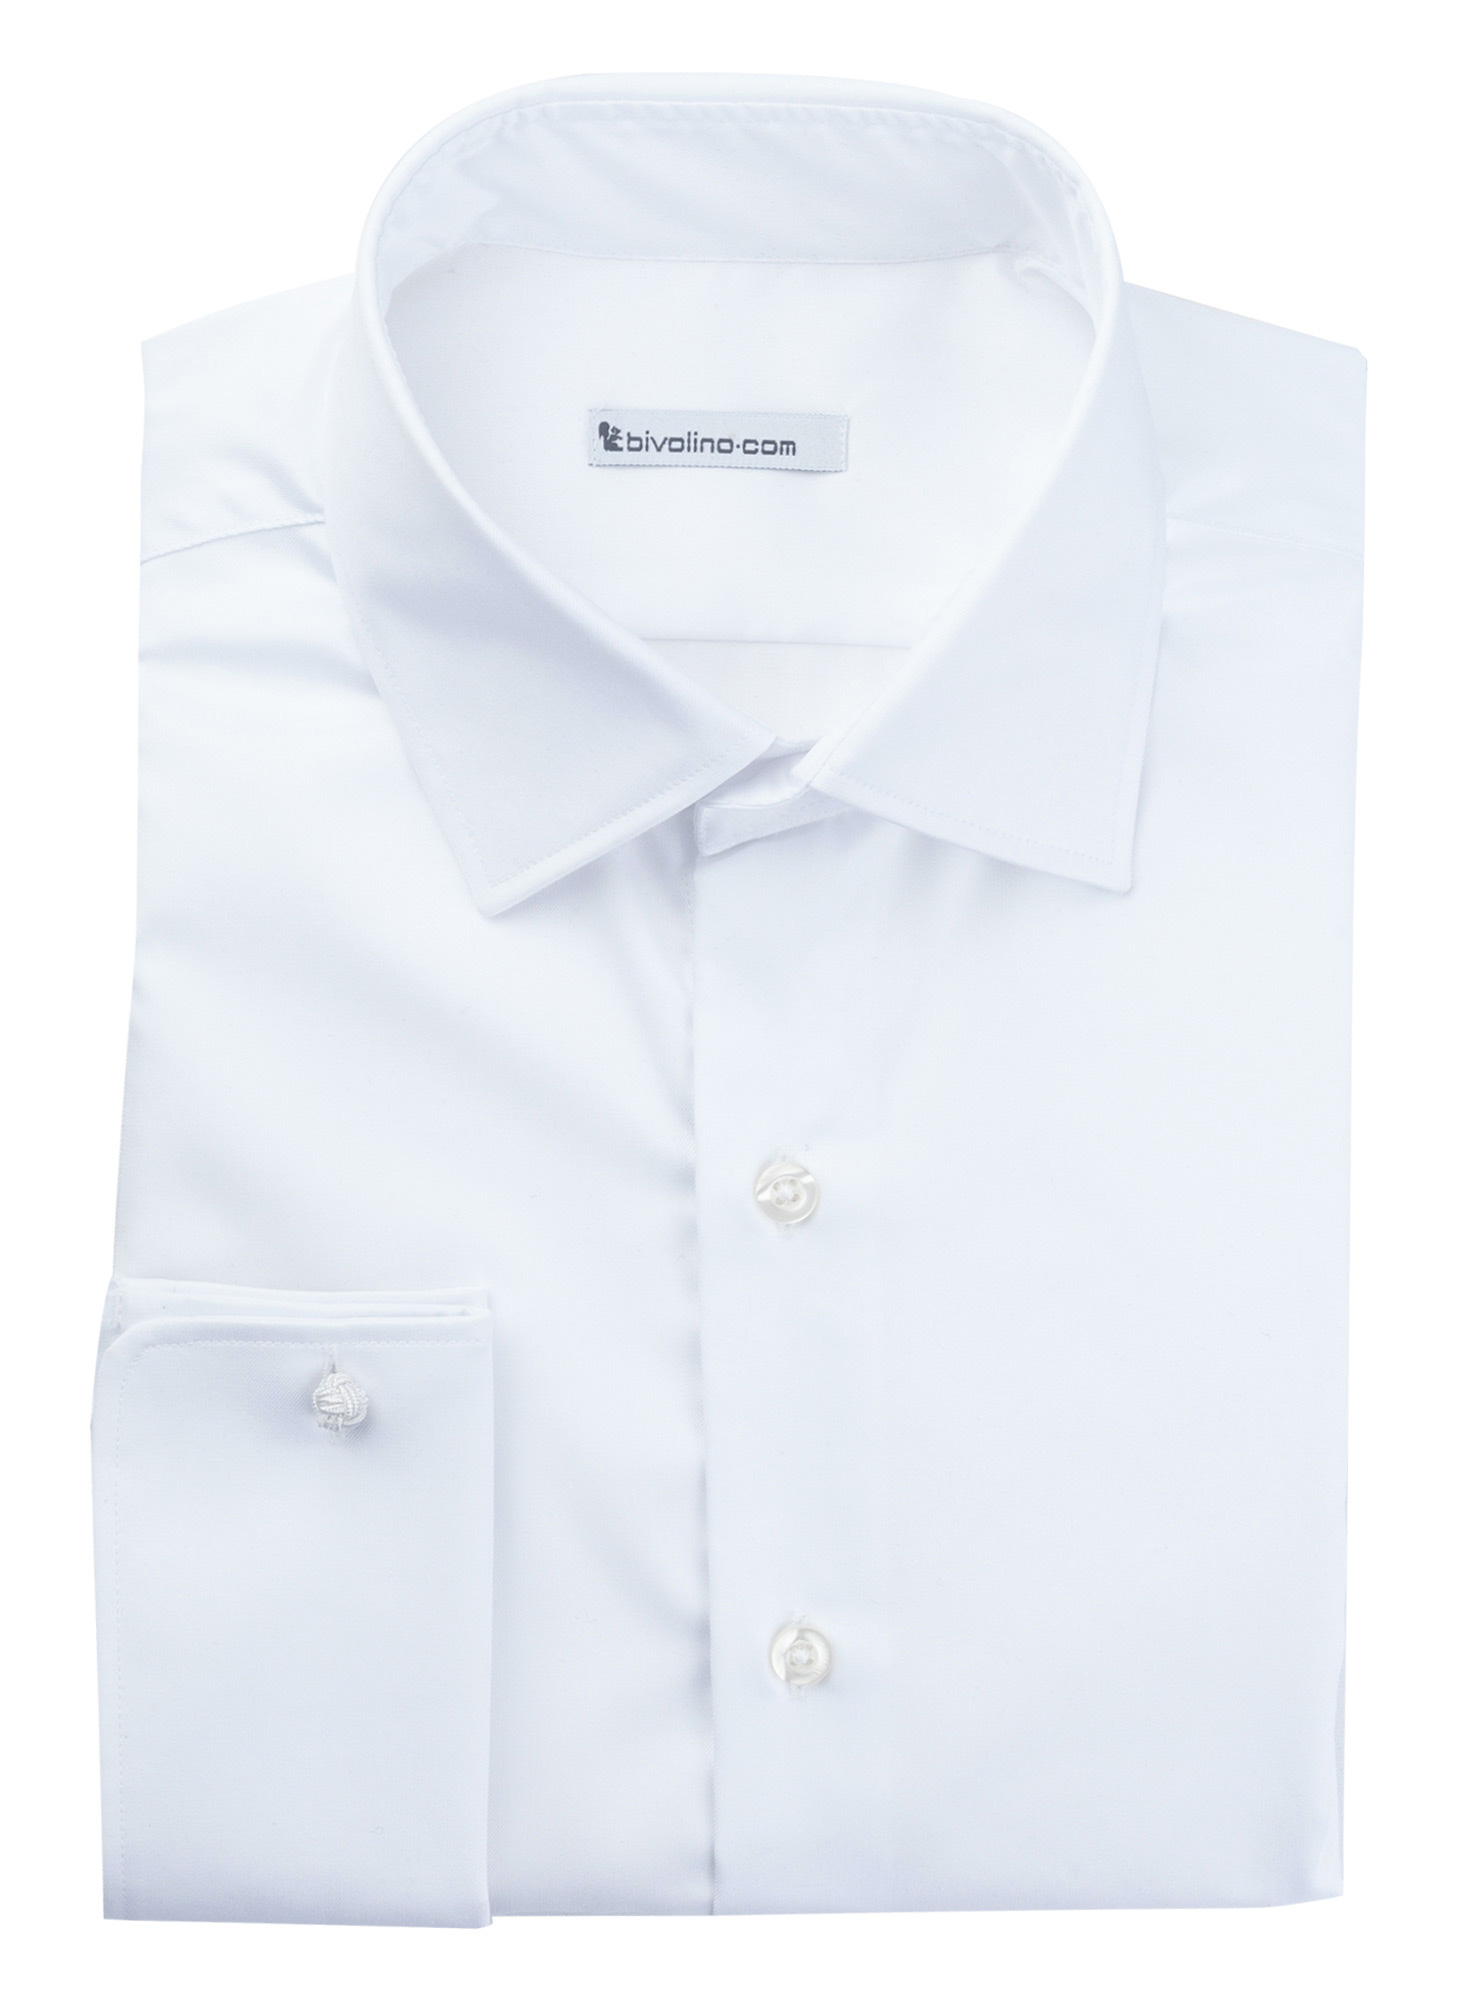 MACERATA - Sarga de algodón egipcio de doble torsión blanca camisa de hombre - MARZI 1